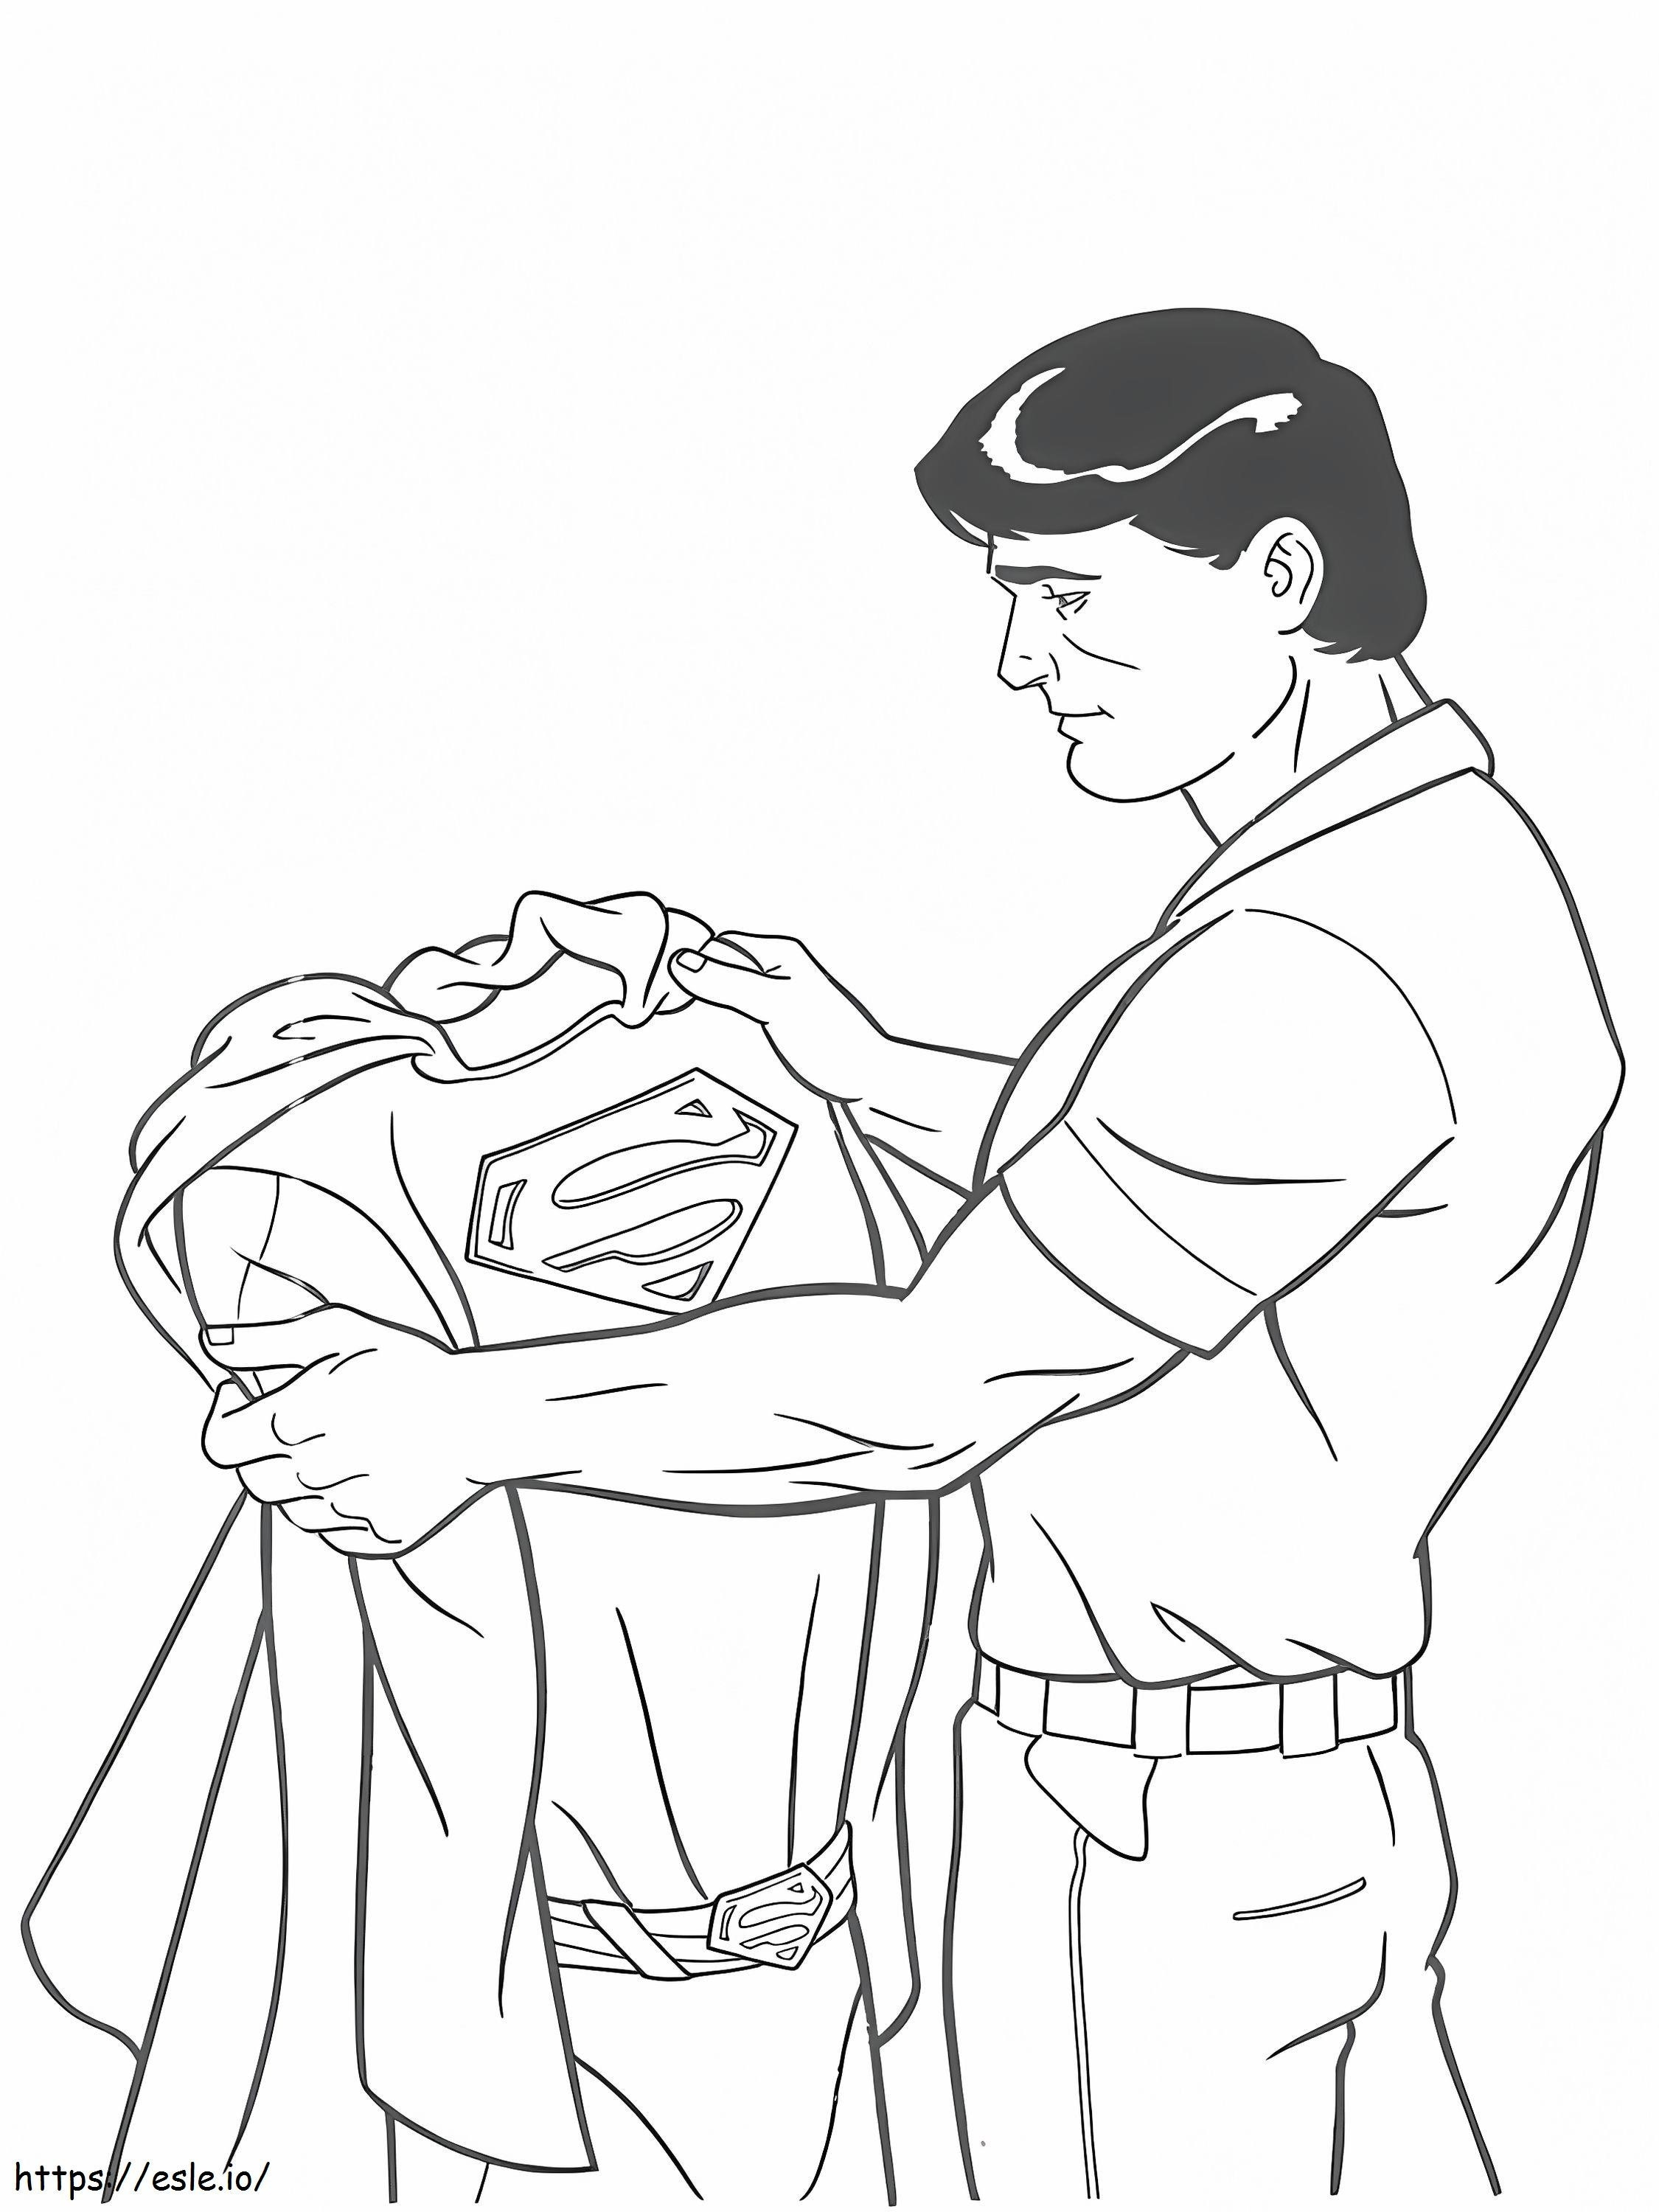 Coloriage  Superman N Ses Vêtements A4 à imprimer dessin